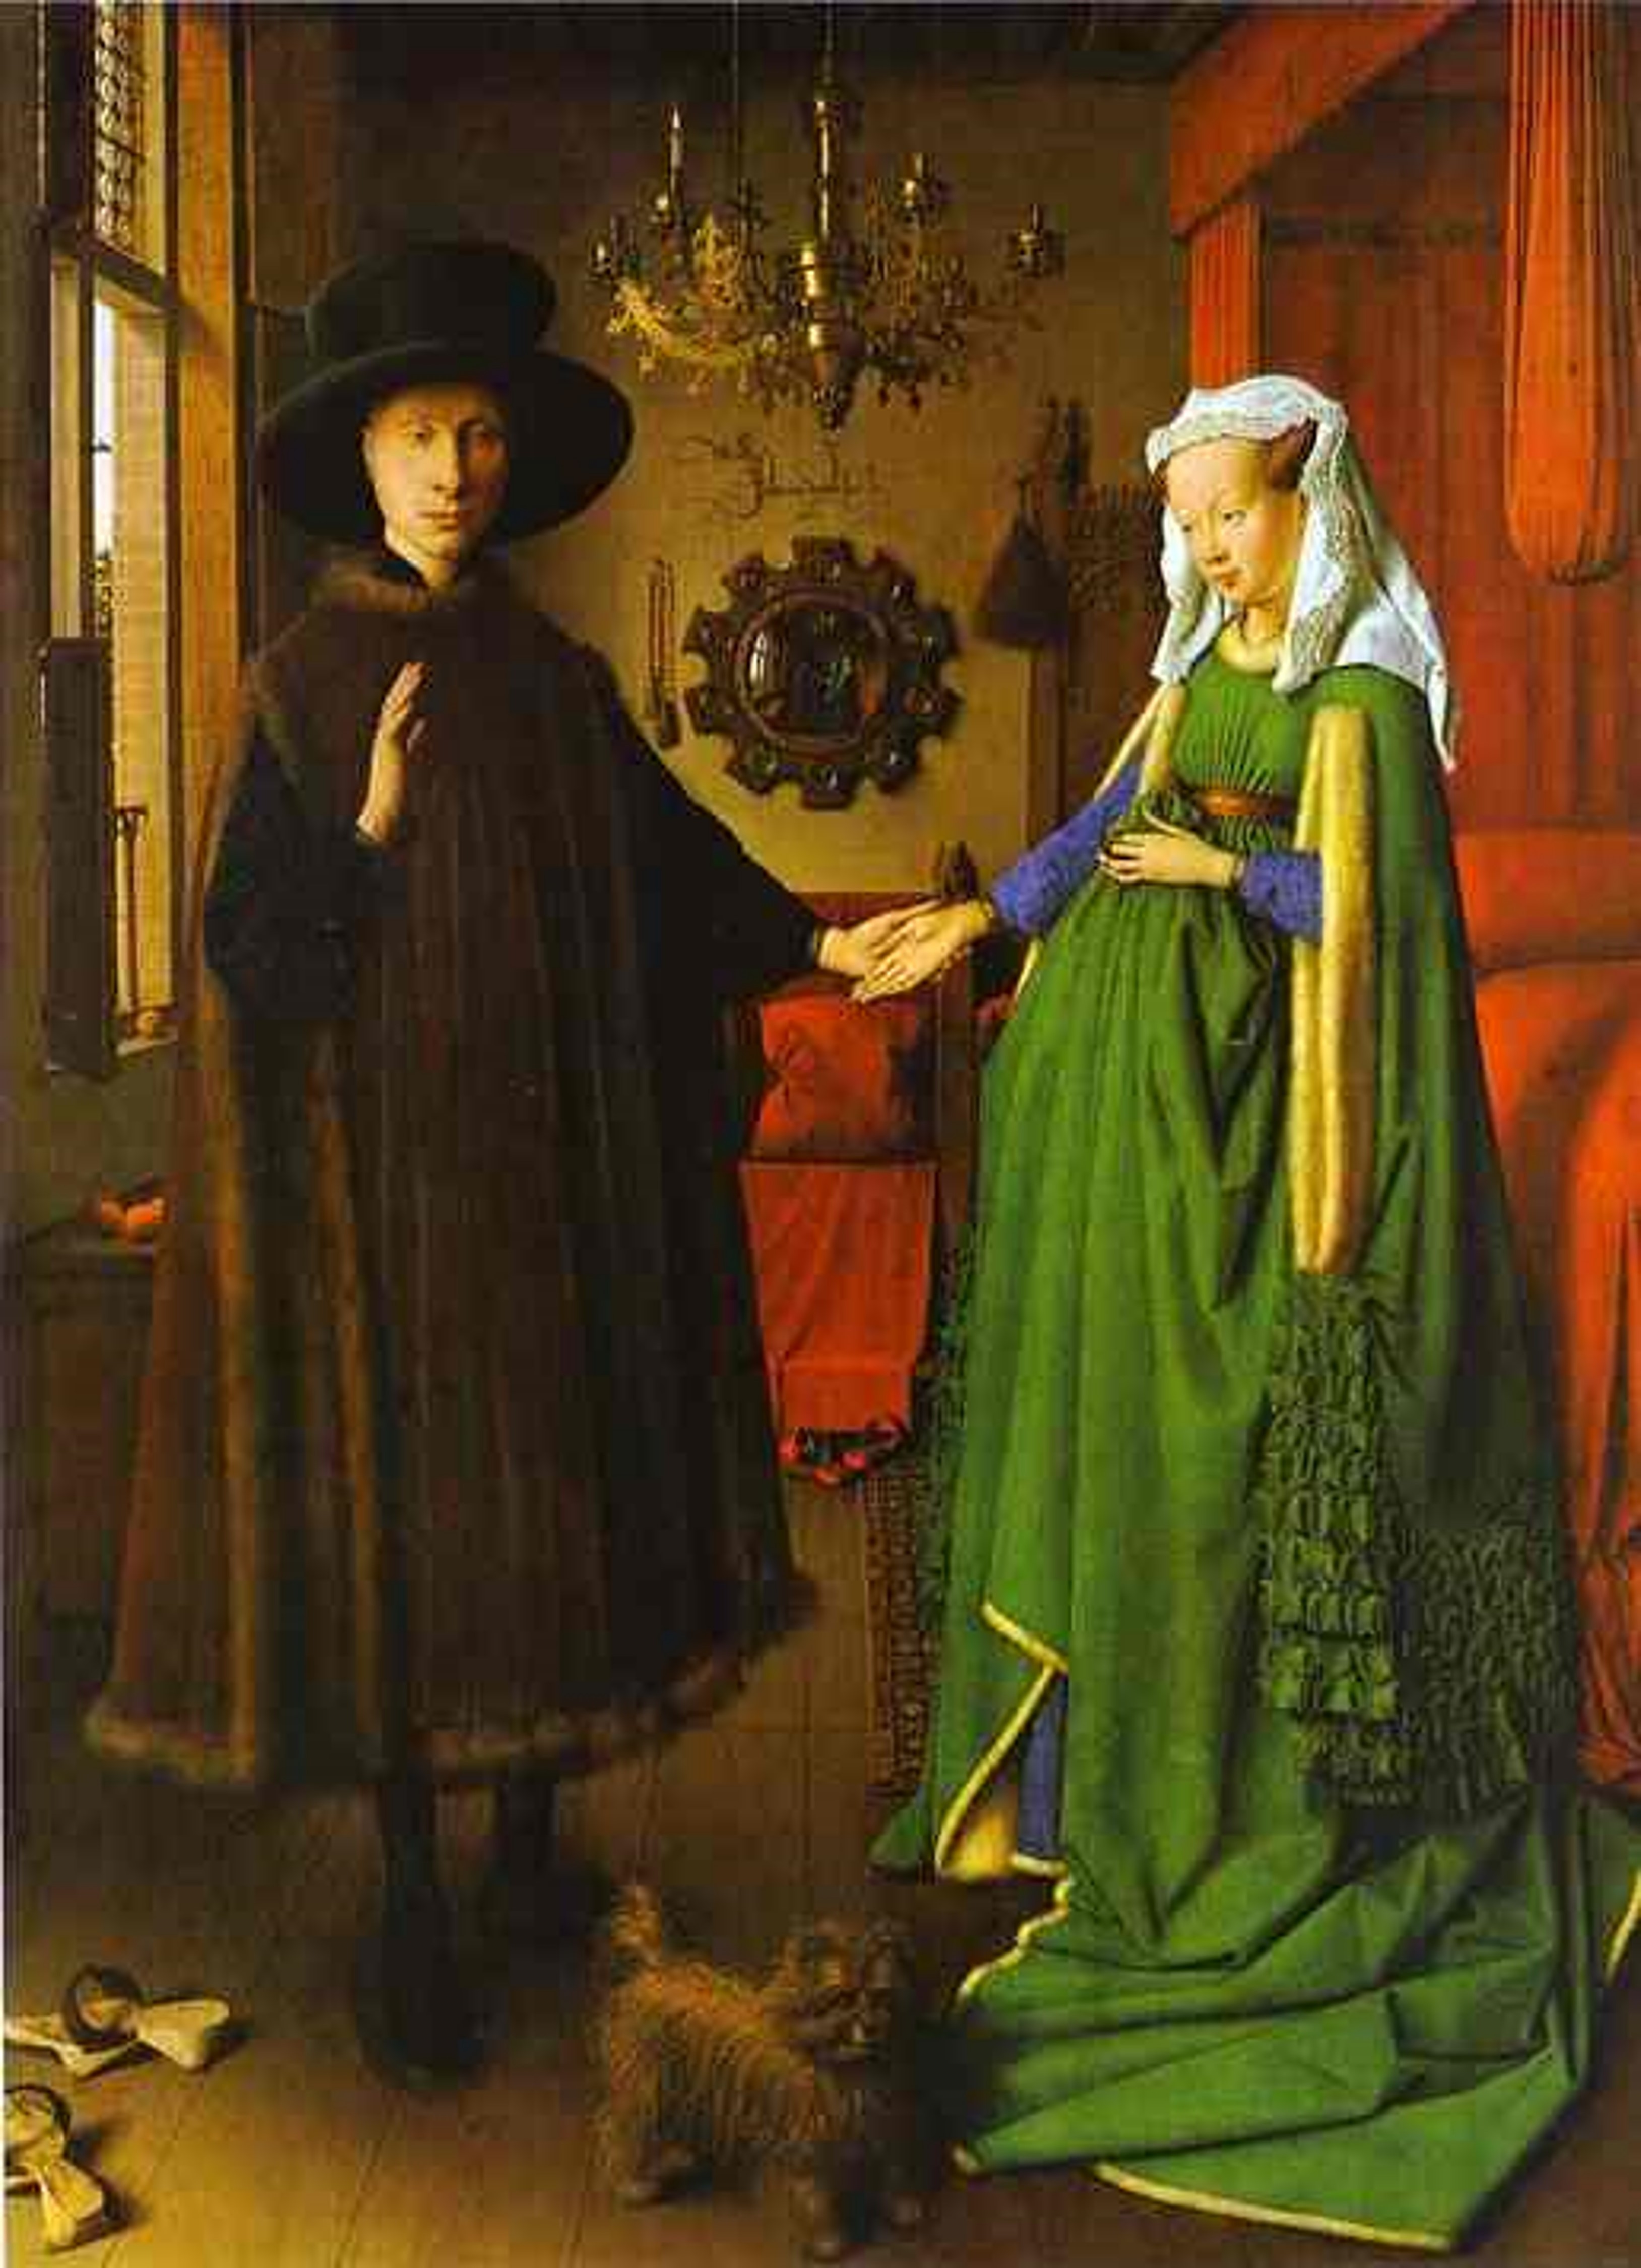 Jan van Eyck, Arnolfini Double Portrait (The Arnolfini Marriage), 1434